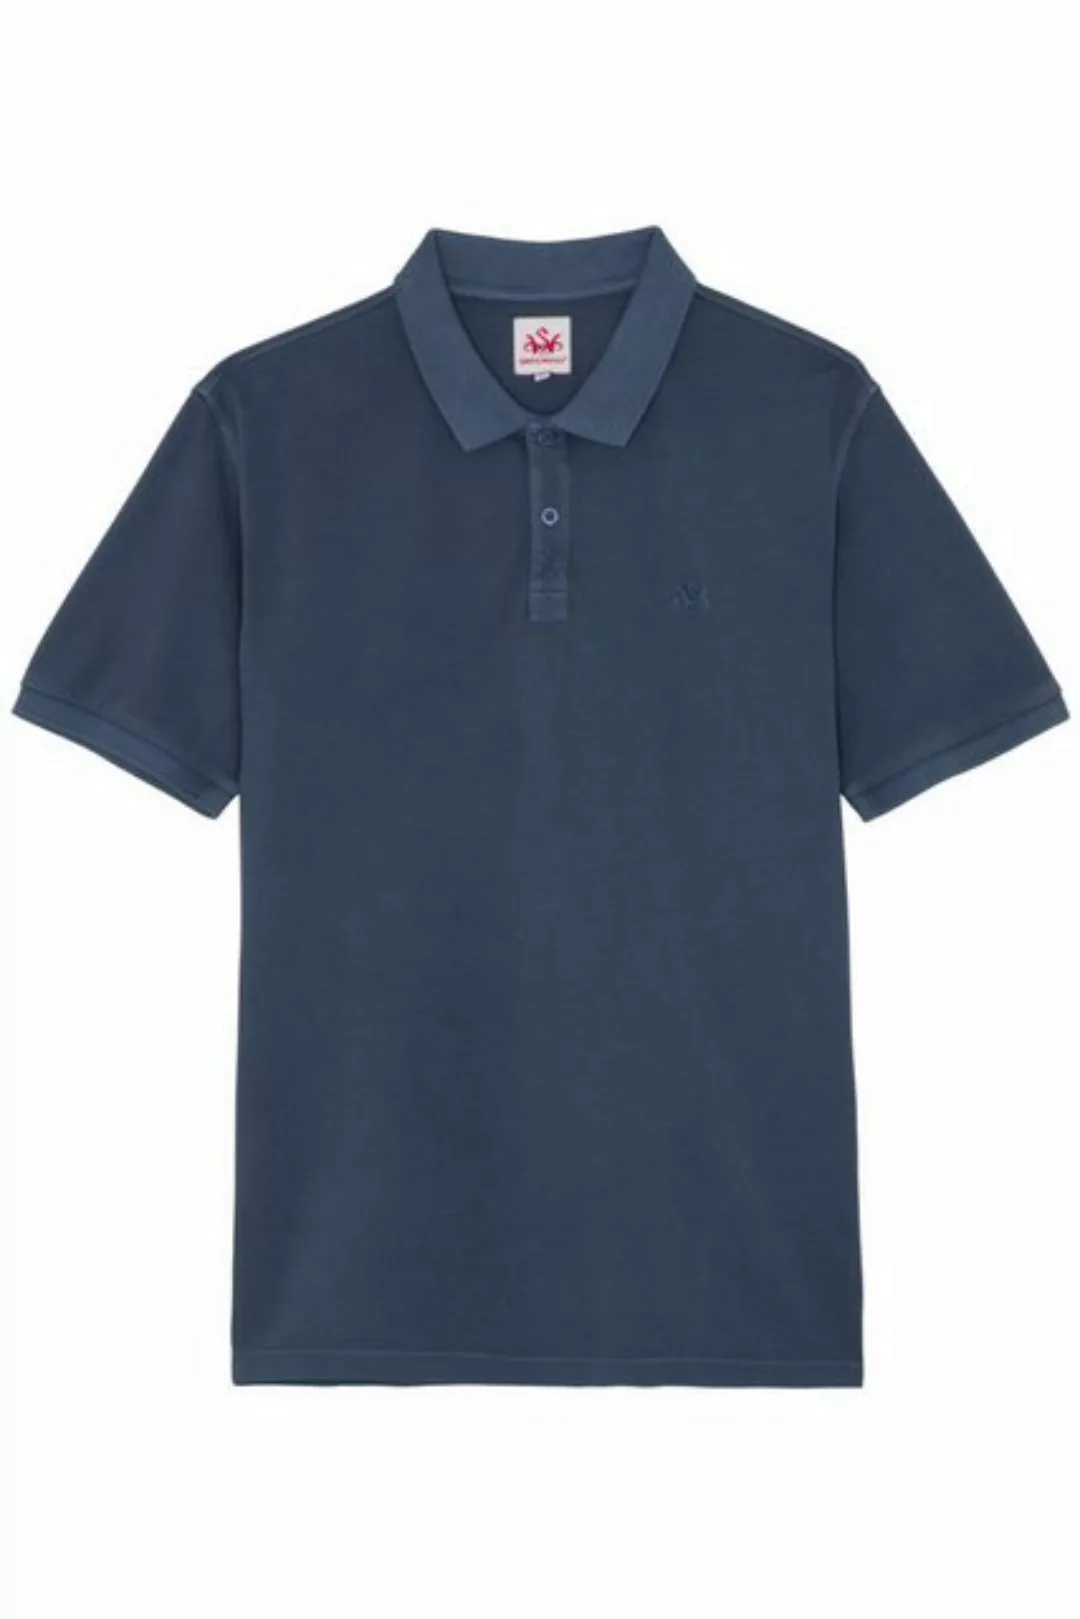 Spieth & Wensky Trachtenshirt Poloshirt Herren - BATTISTA - navy light, oli günstig online kaufen